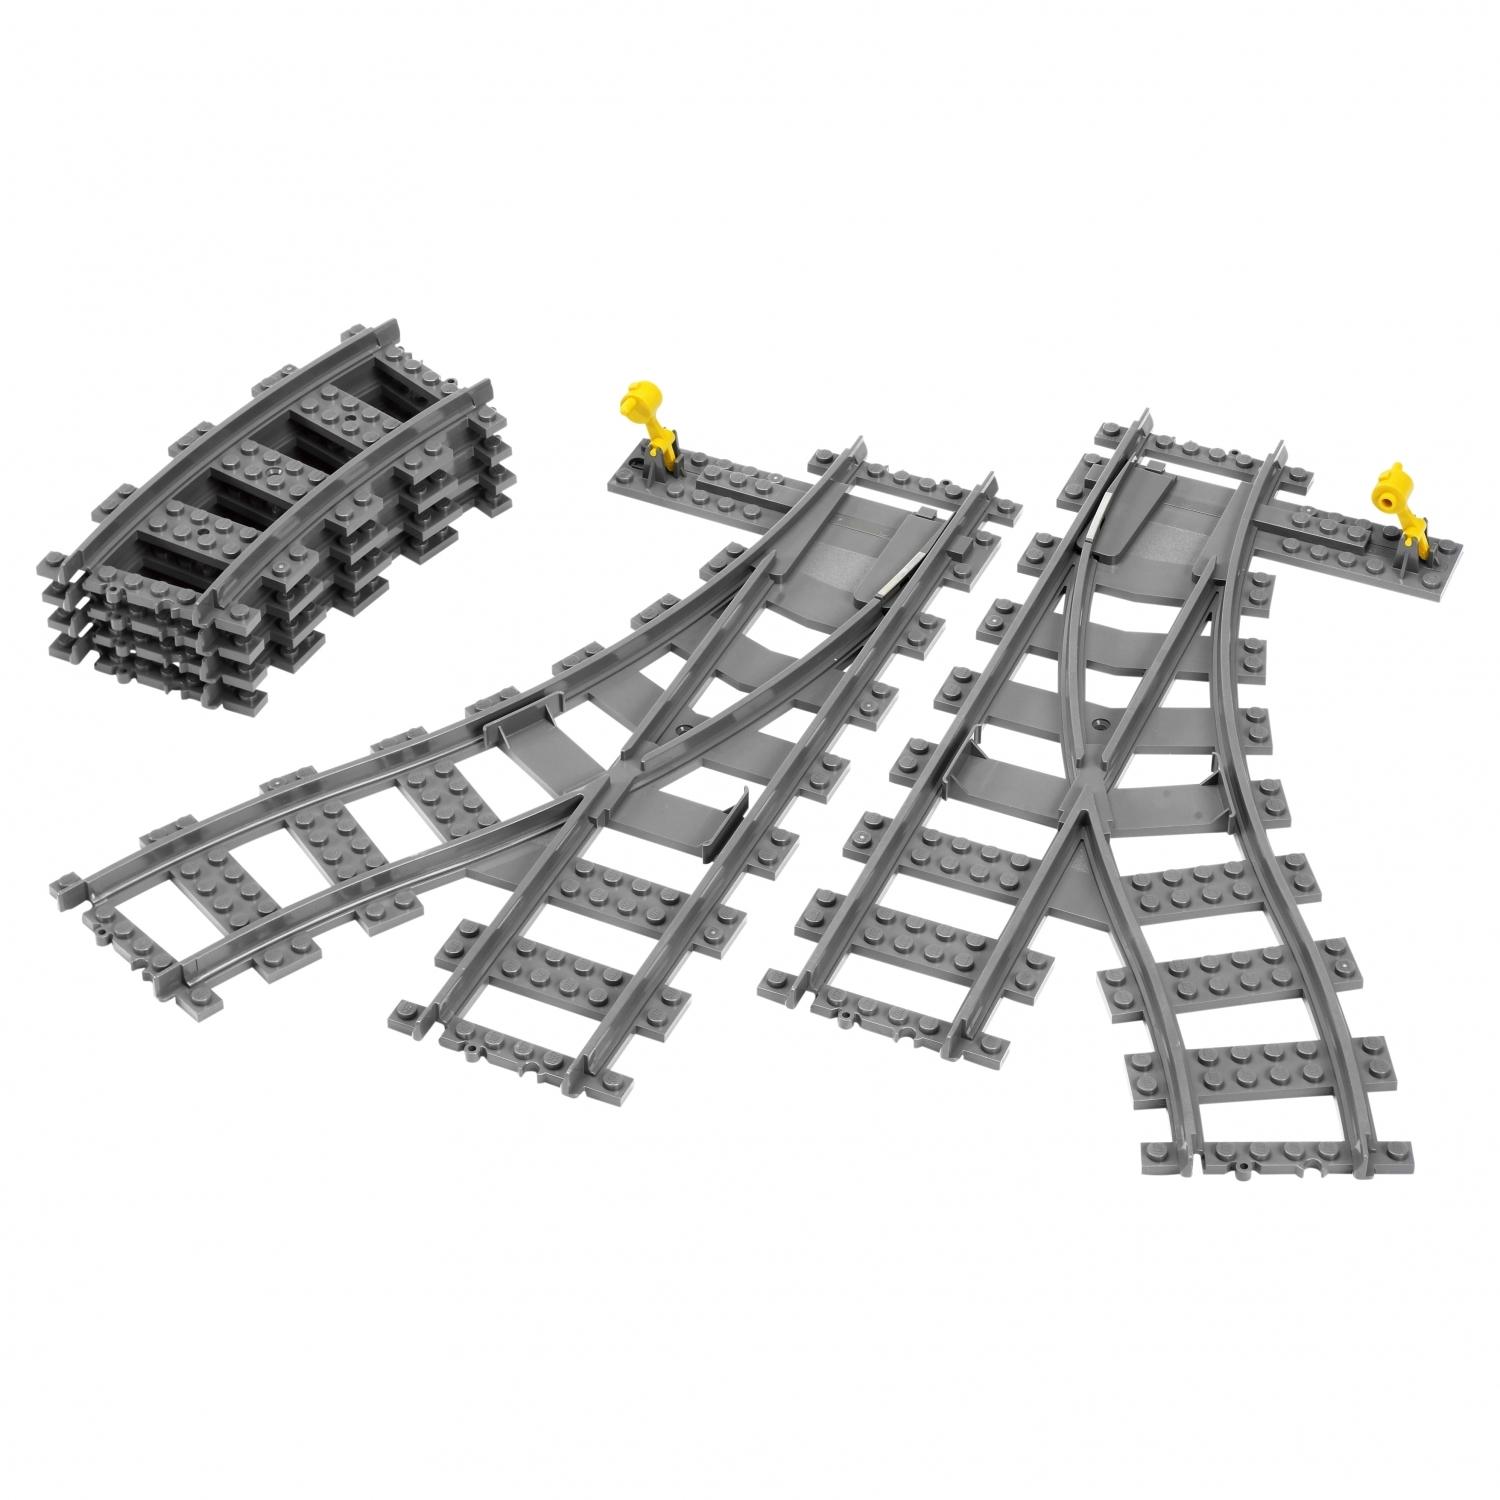 Lego City 7895 Железнодорожные стрелки